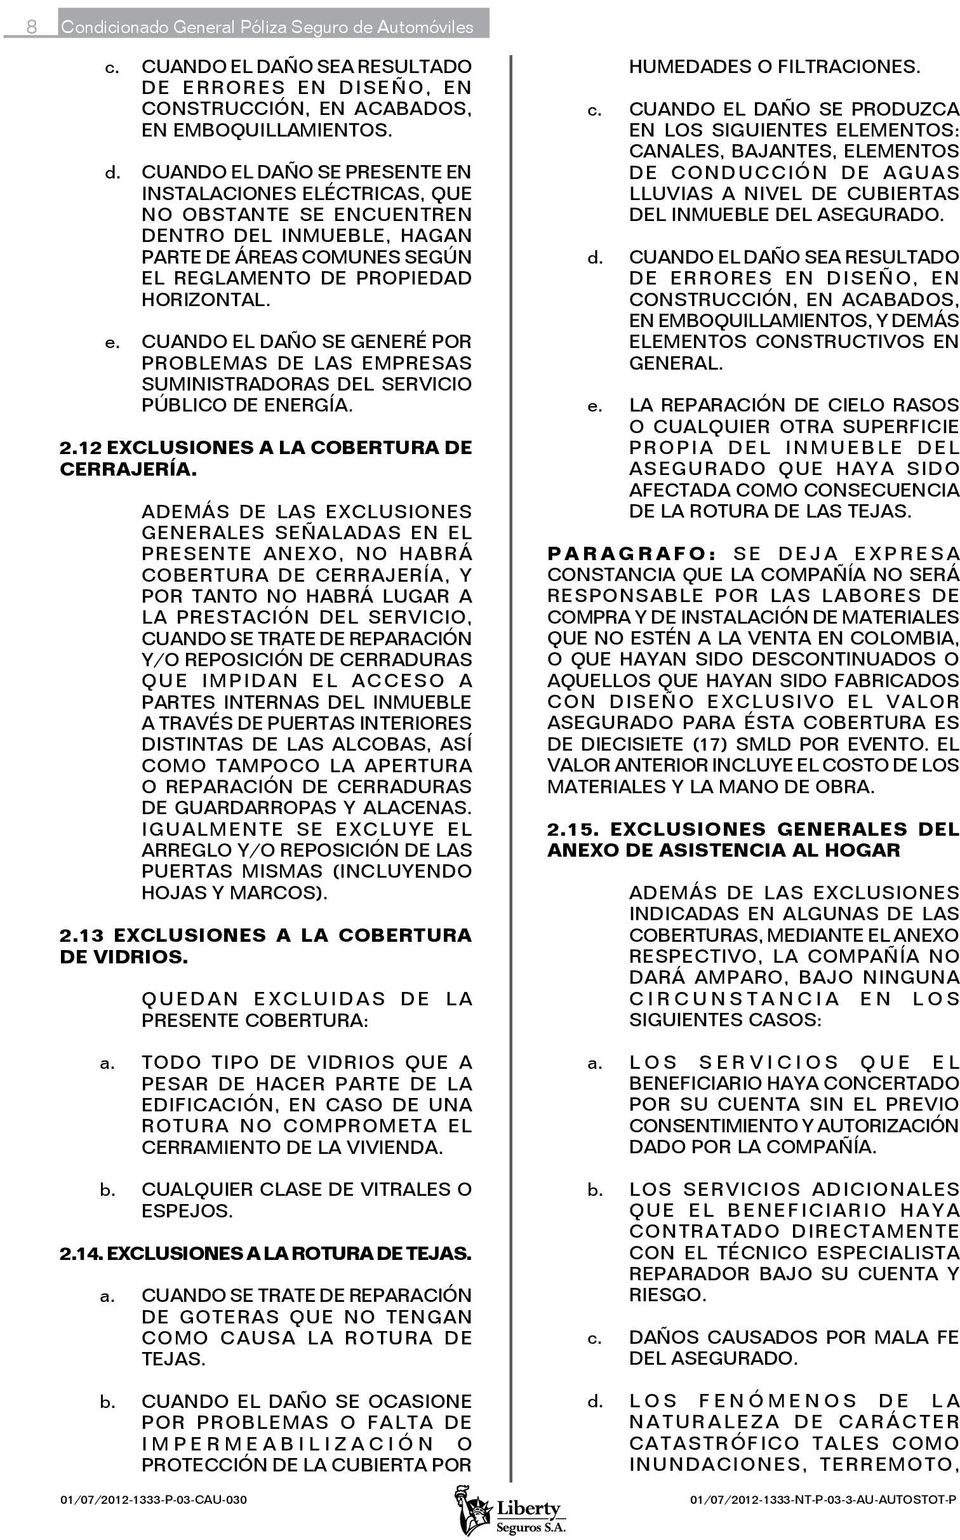 CUANDO EL DAÑO SE GENERÉ POR PROBLEMAS DE LAS EMPRESAS SUMINISTRADORAS DEL SERVICIO PÚBLICO DE ENERGÍA. 2.12 EXCLUSIONES A LA COBERTURA DE CERRAJERÍA.